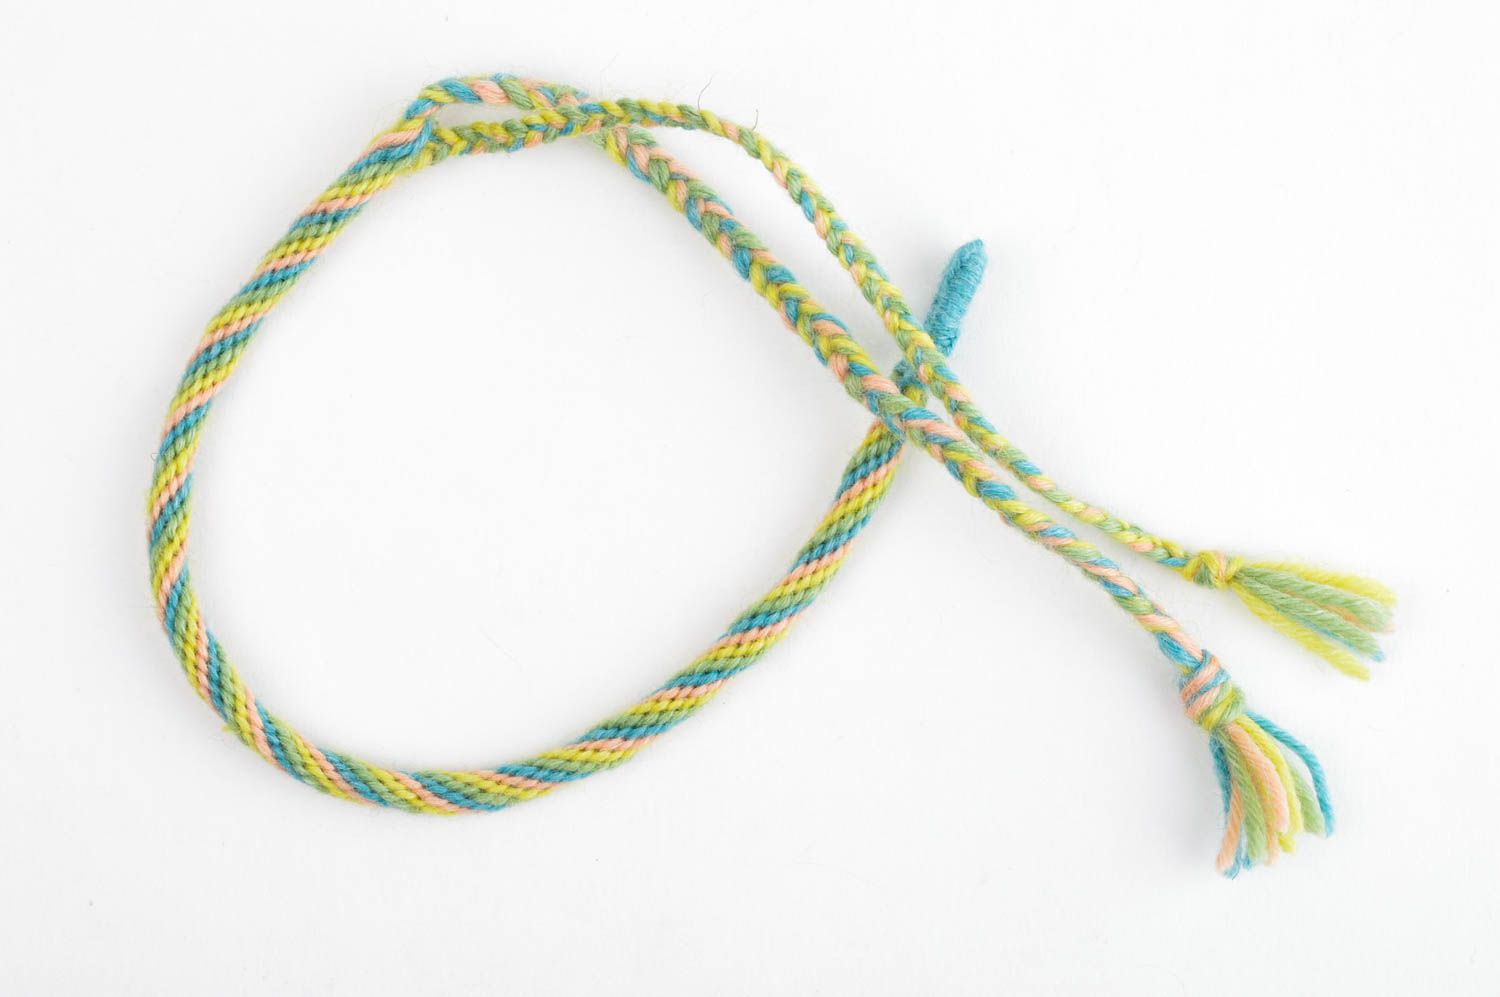 Плетеный браслет ручной работы браслет из ниток яркий модный браслет стильный фото 3